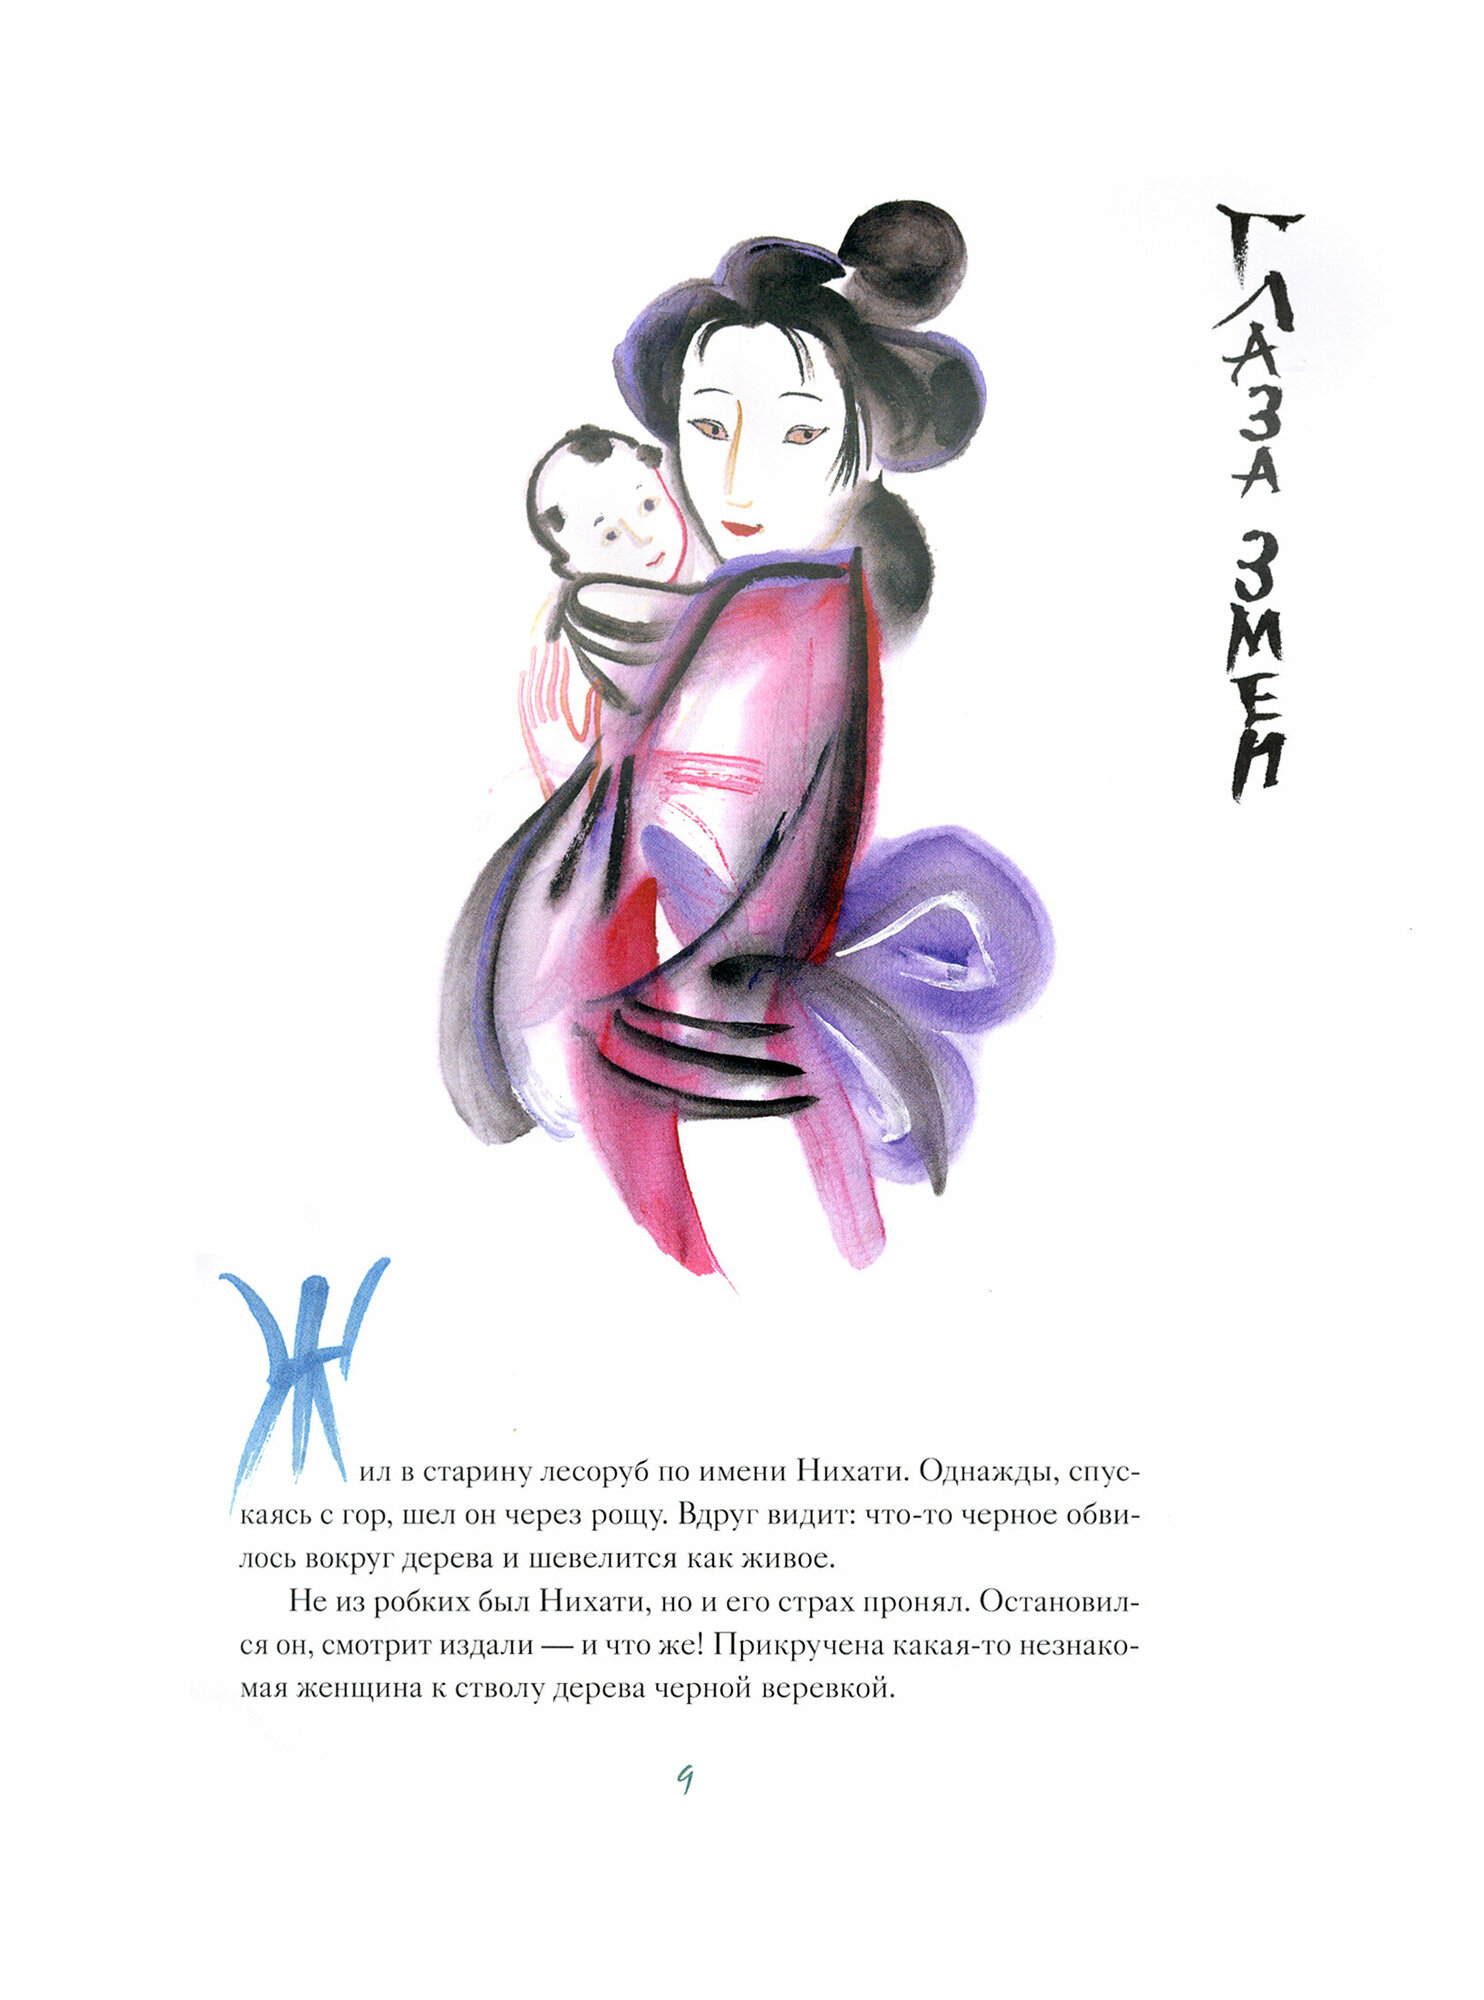 Соперница в зеркале: японские народные сказки - фото №4